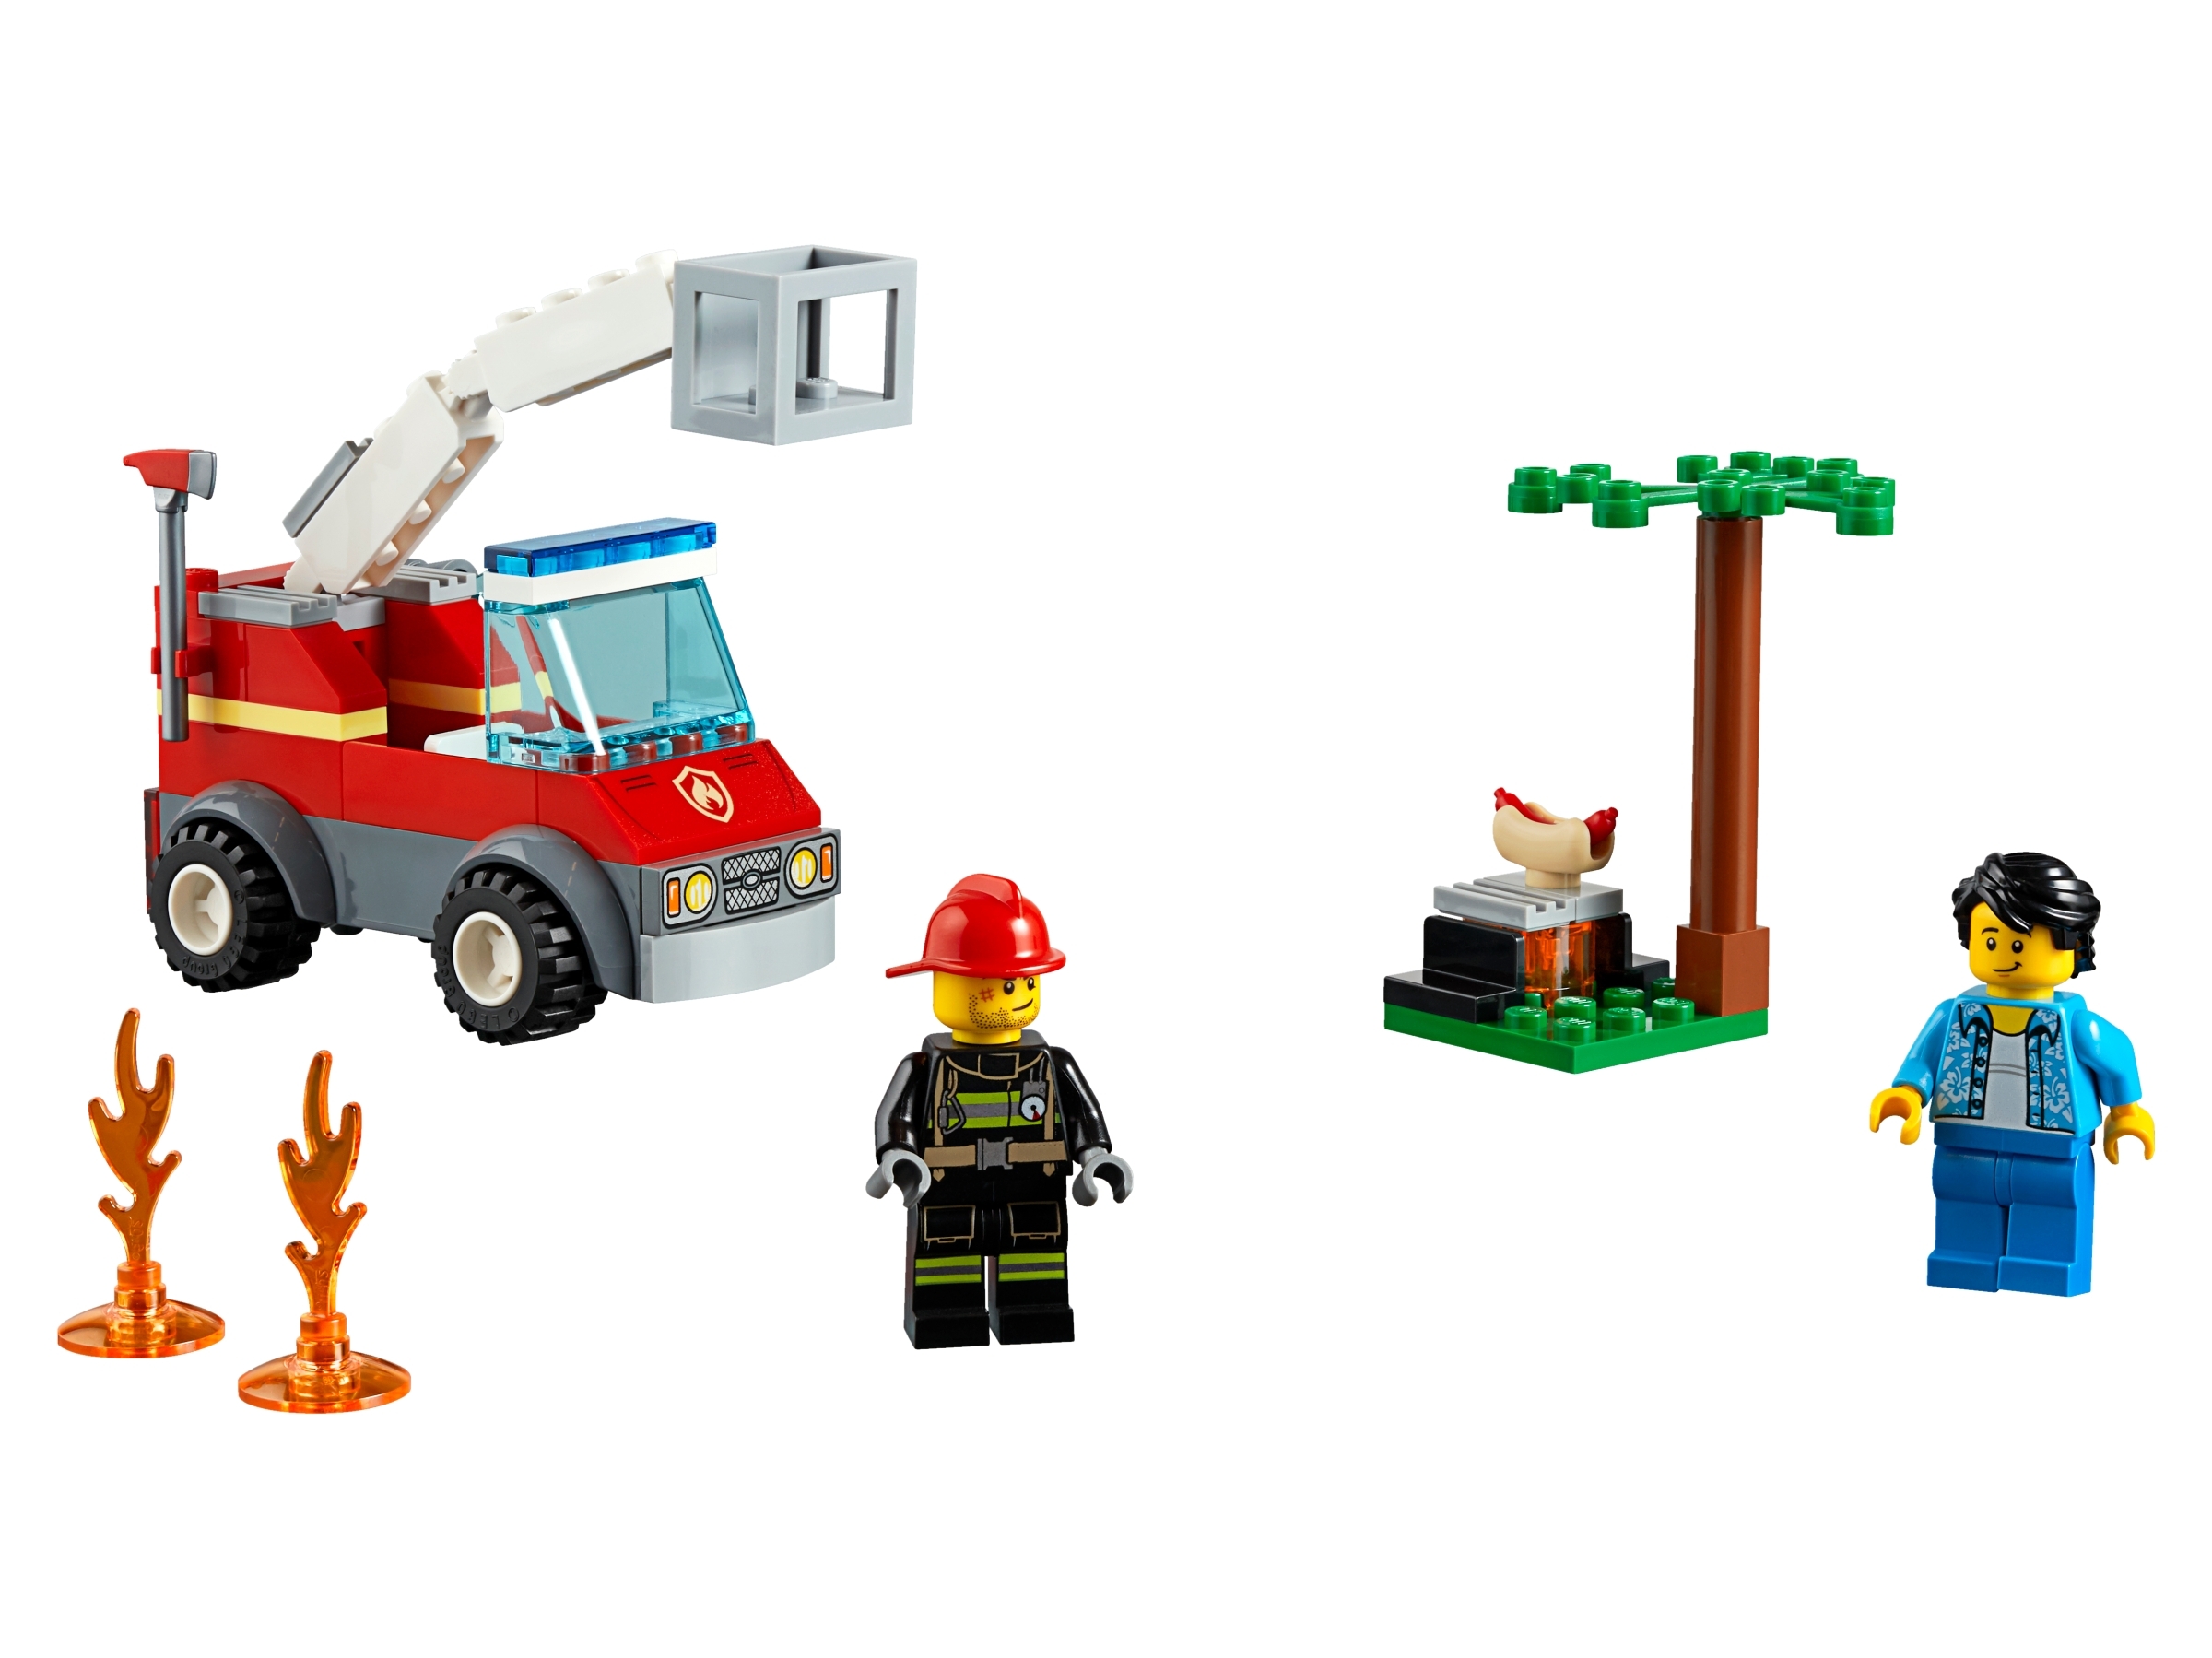 Klocki Lego City 60212, Płonący grill